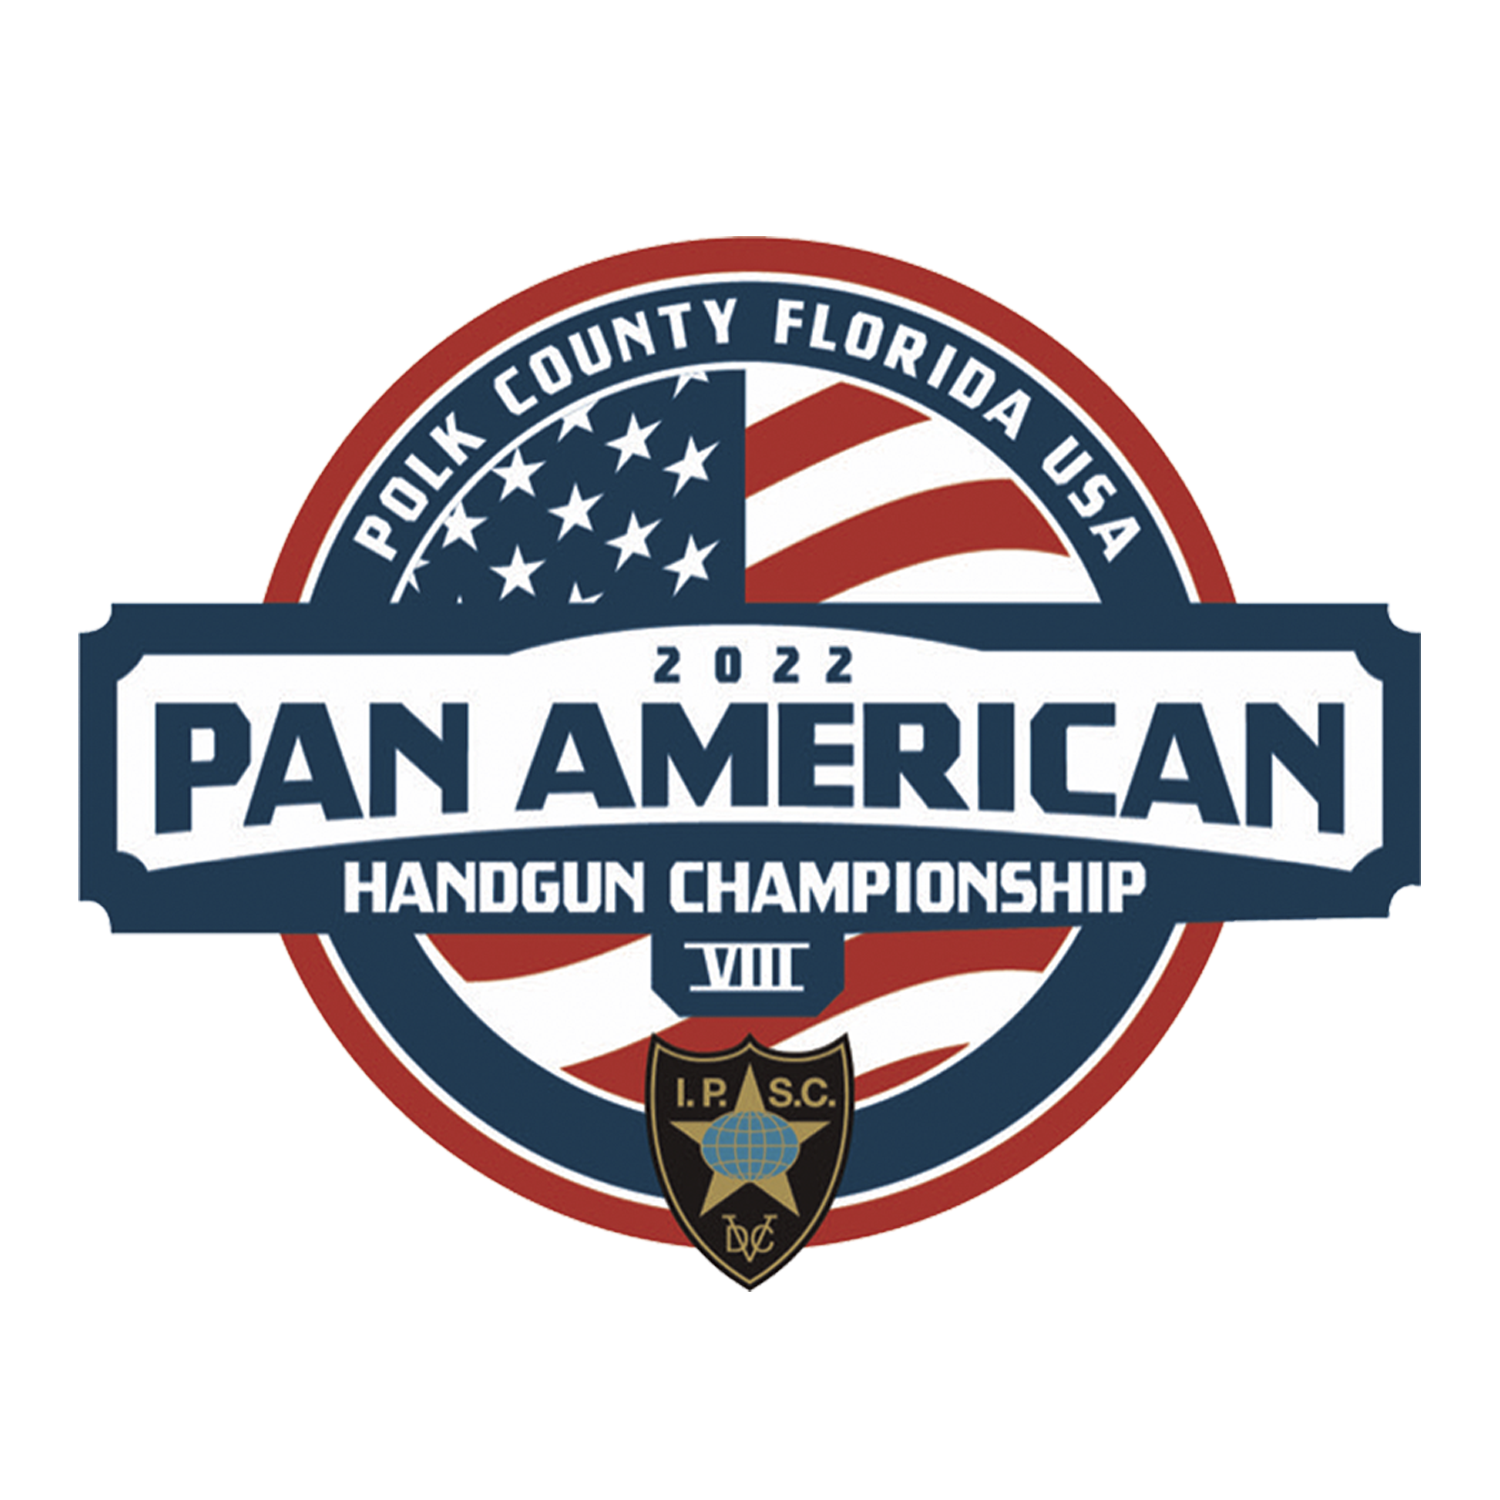 2022 Pan American Handgun Championship